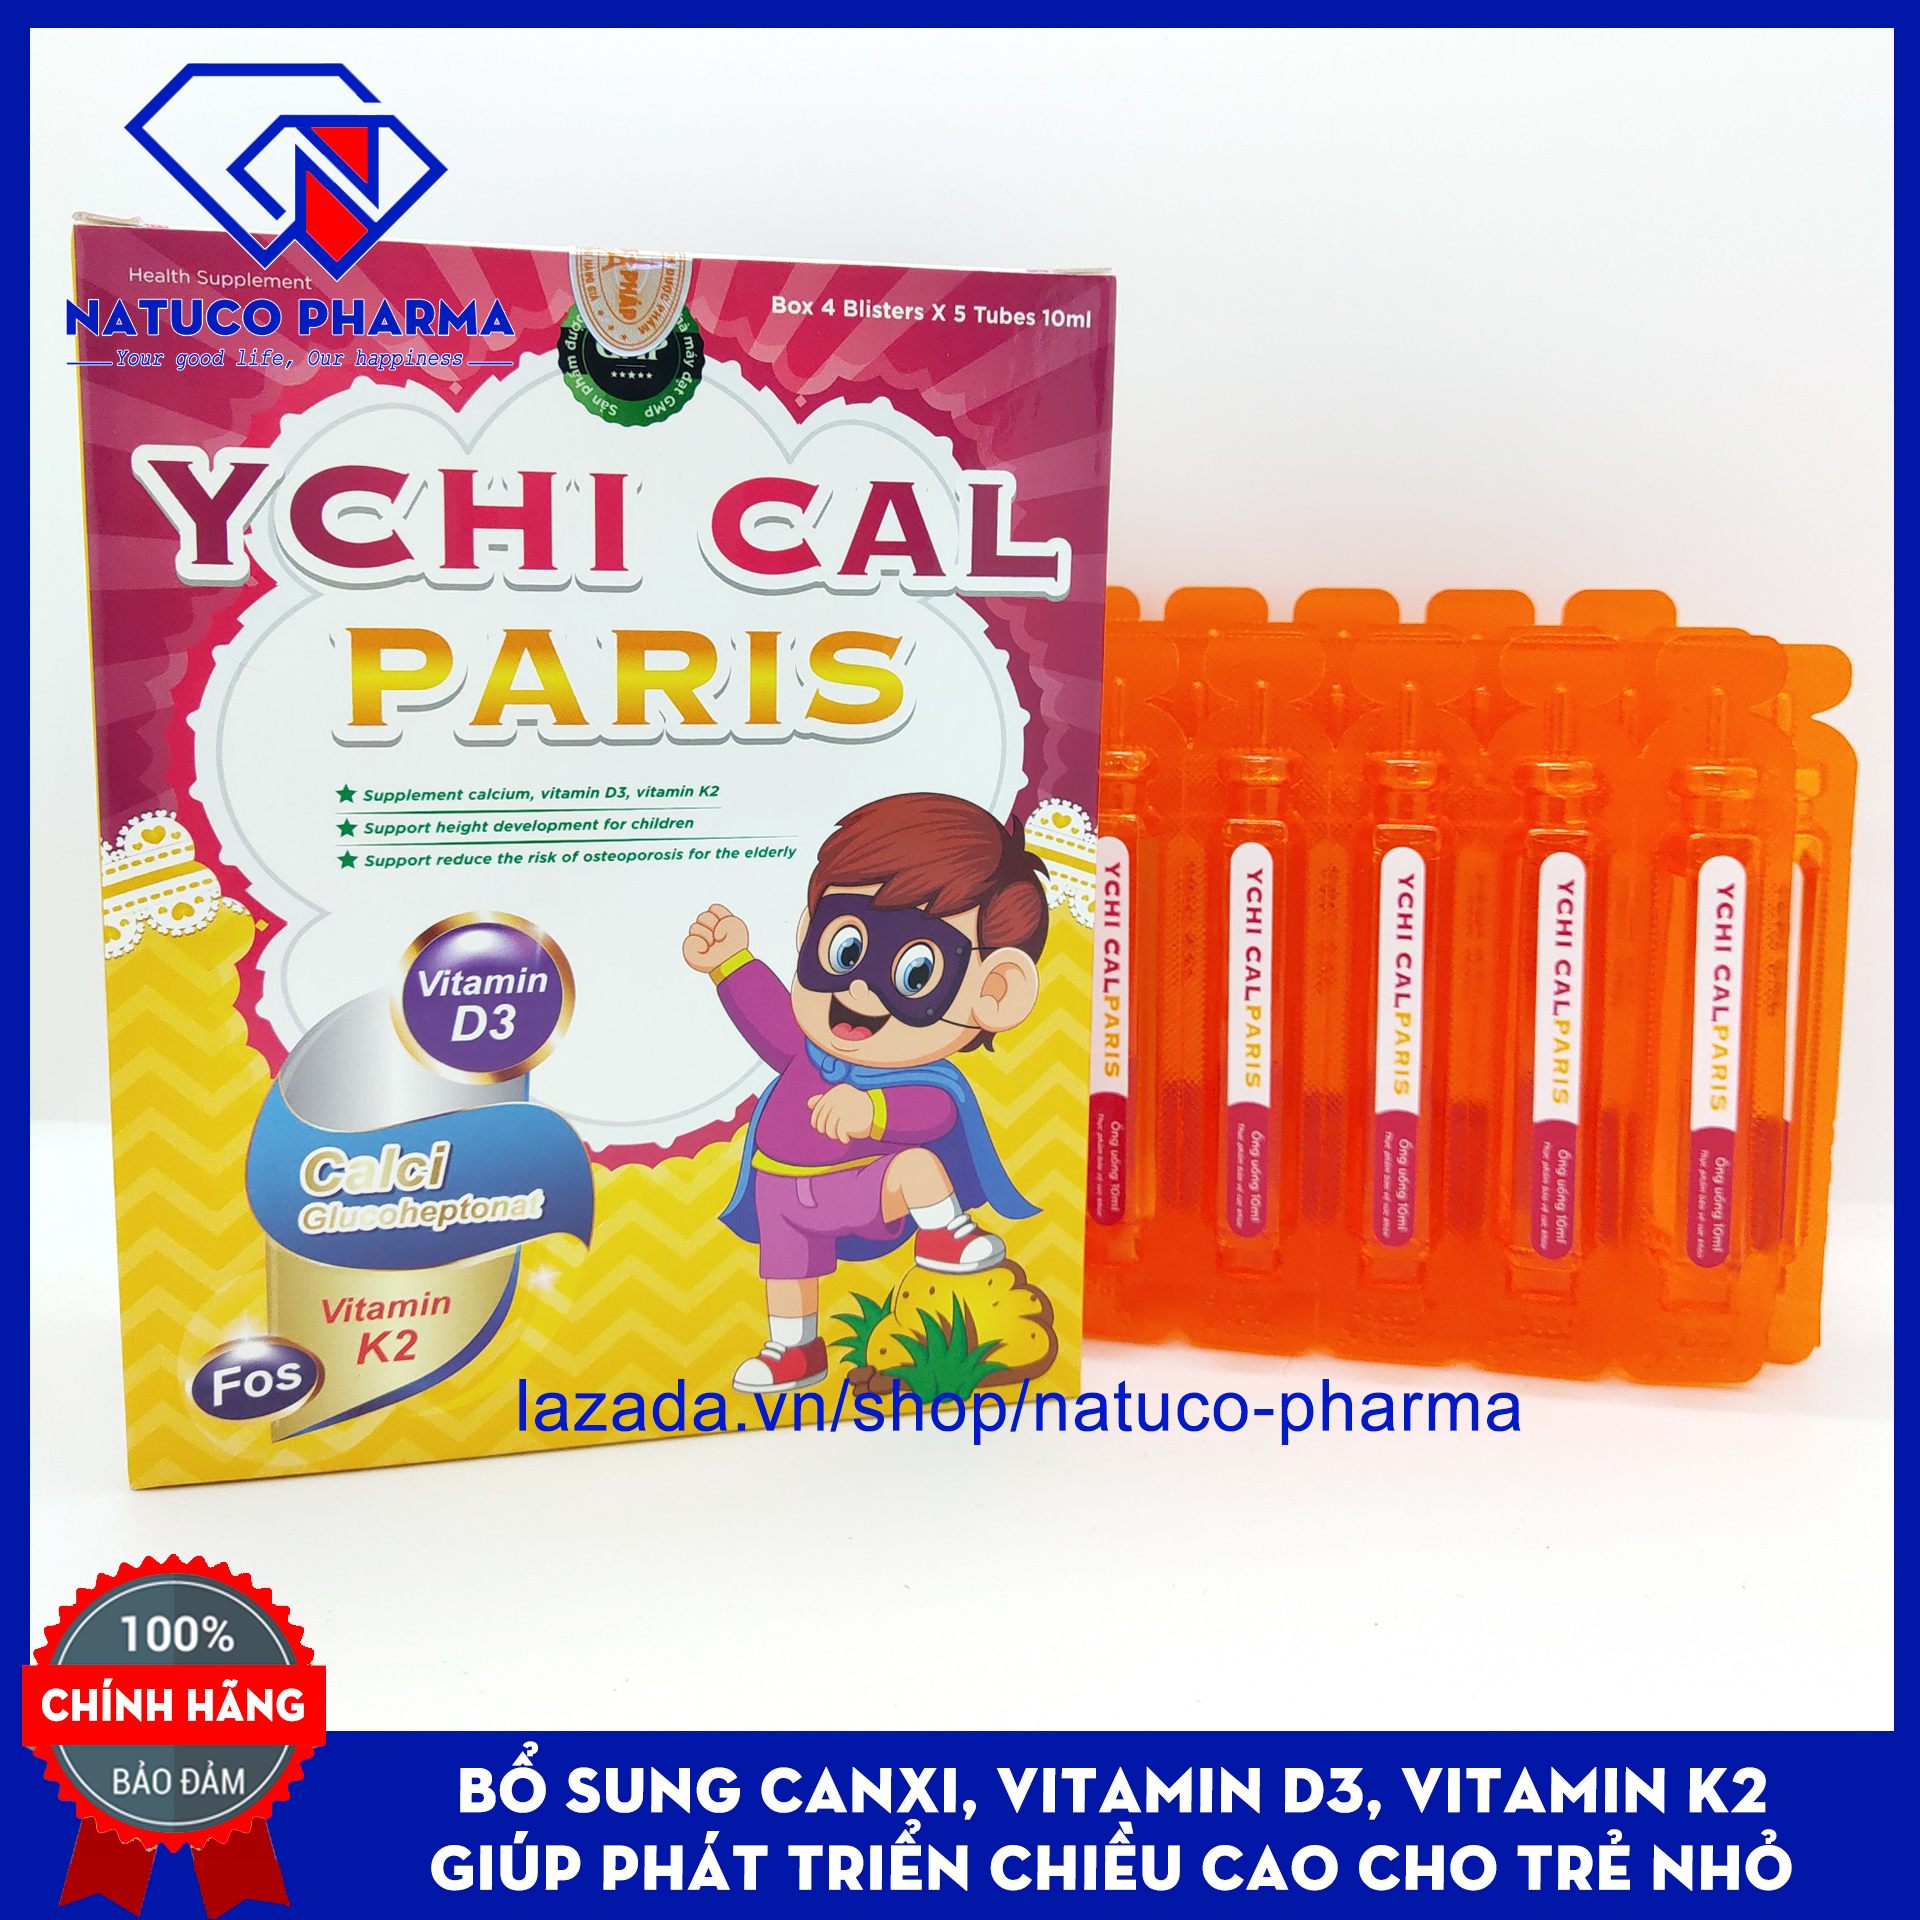 Siro bổ sung canxi tăng chiều cao cho bé YCHI CAL-PARIS - Bổ sung canxi, vitamin D3, Vitamin K2 giúp phát triển xương, tăng chiều cao - Hộp 20 ống 10ml - Chuẩn GMP Bộ Y tế